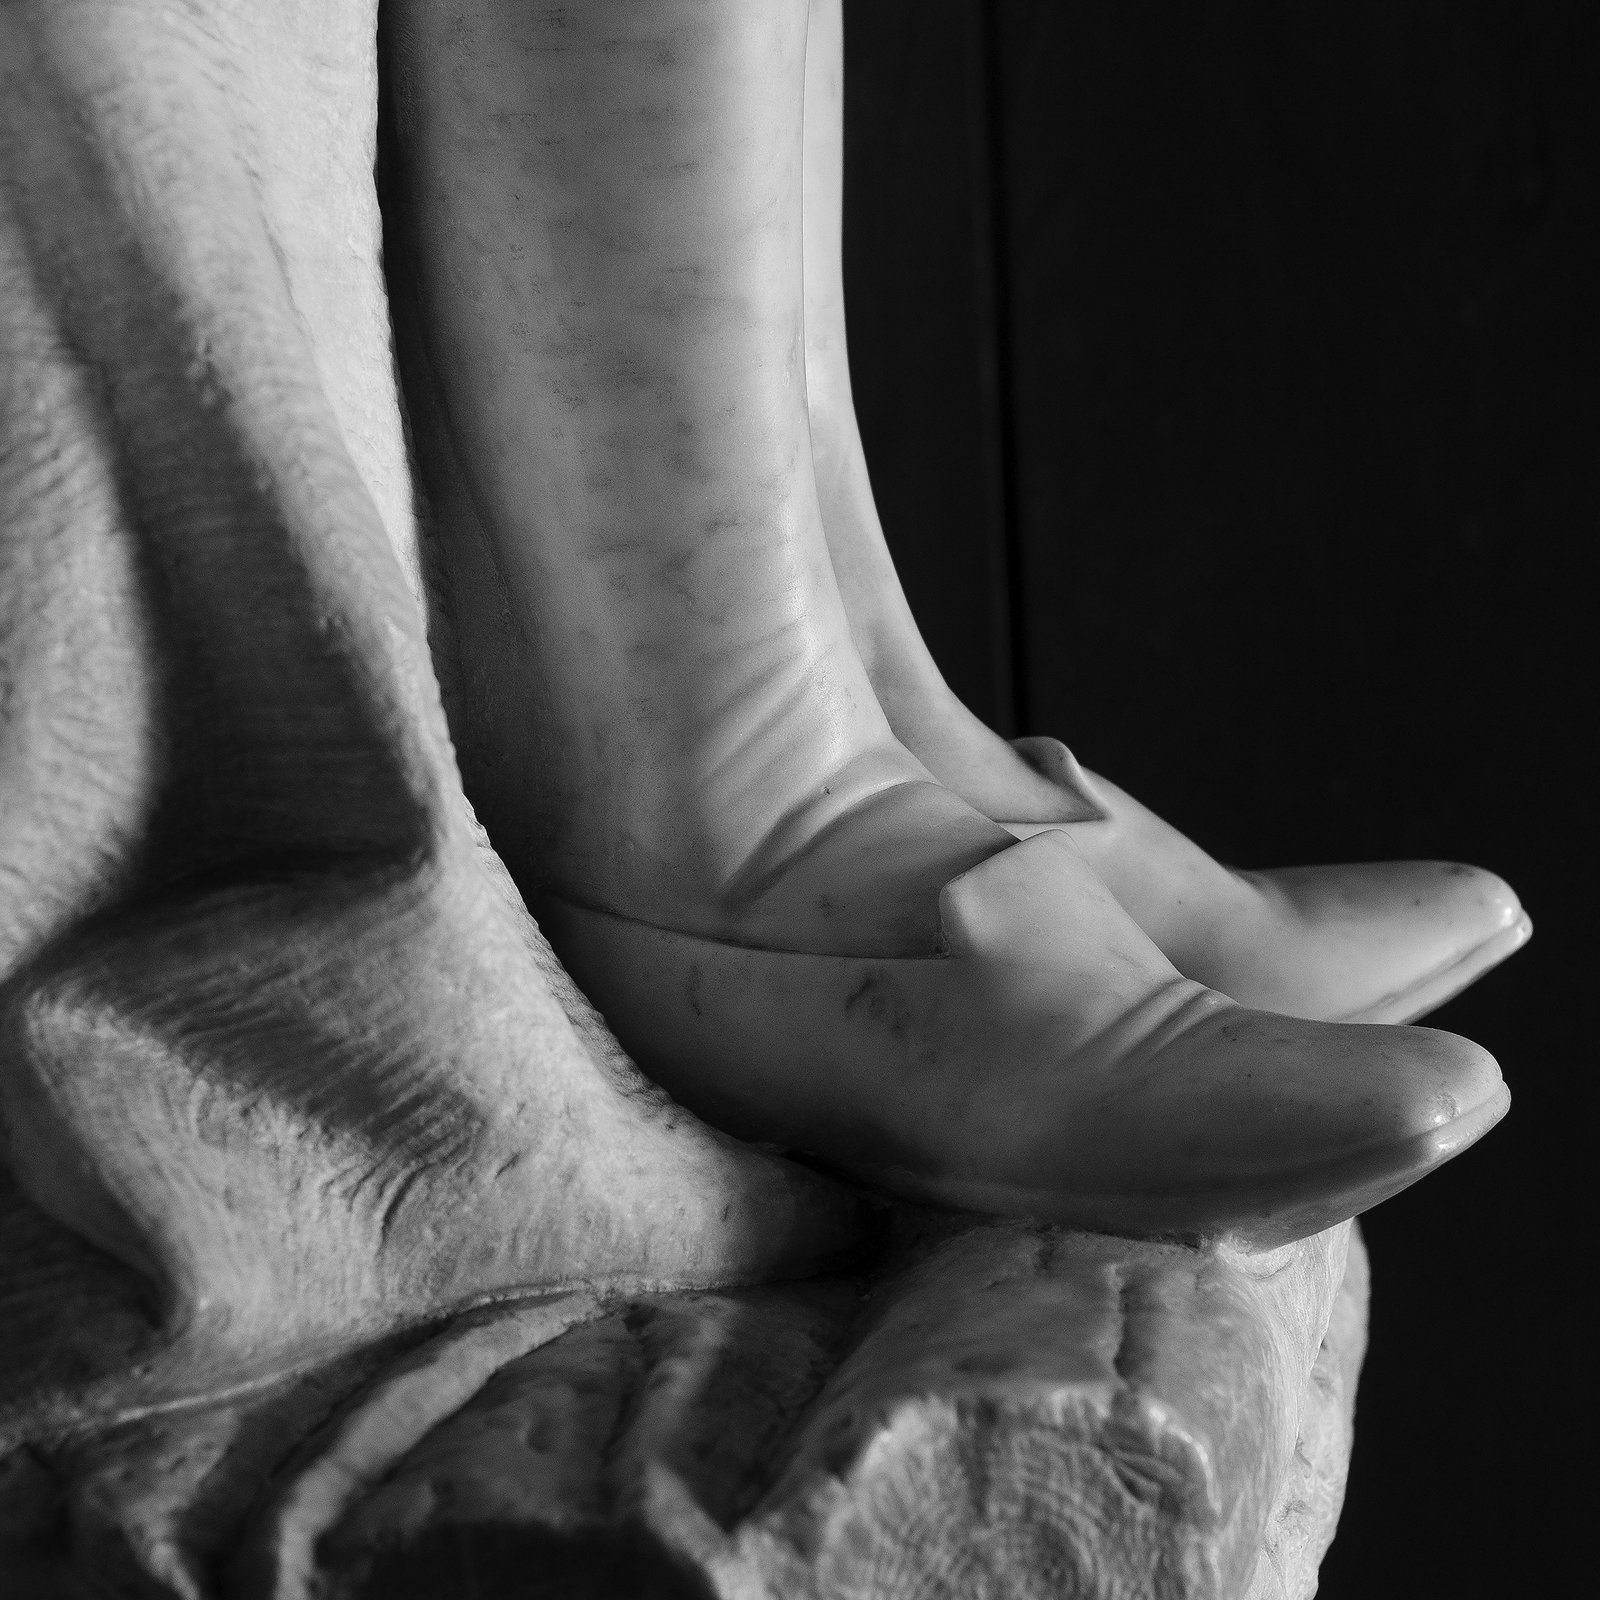 The Shoe of Don Guillén de Lampart